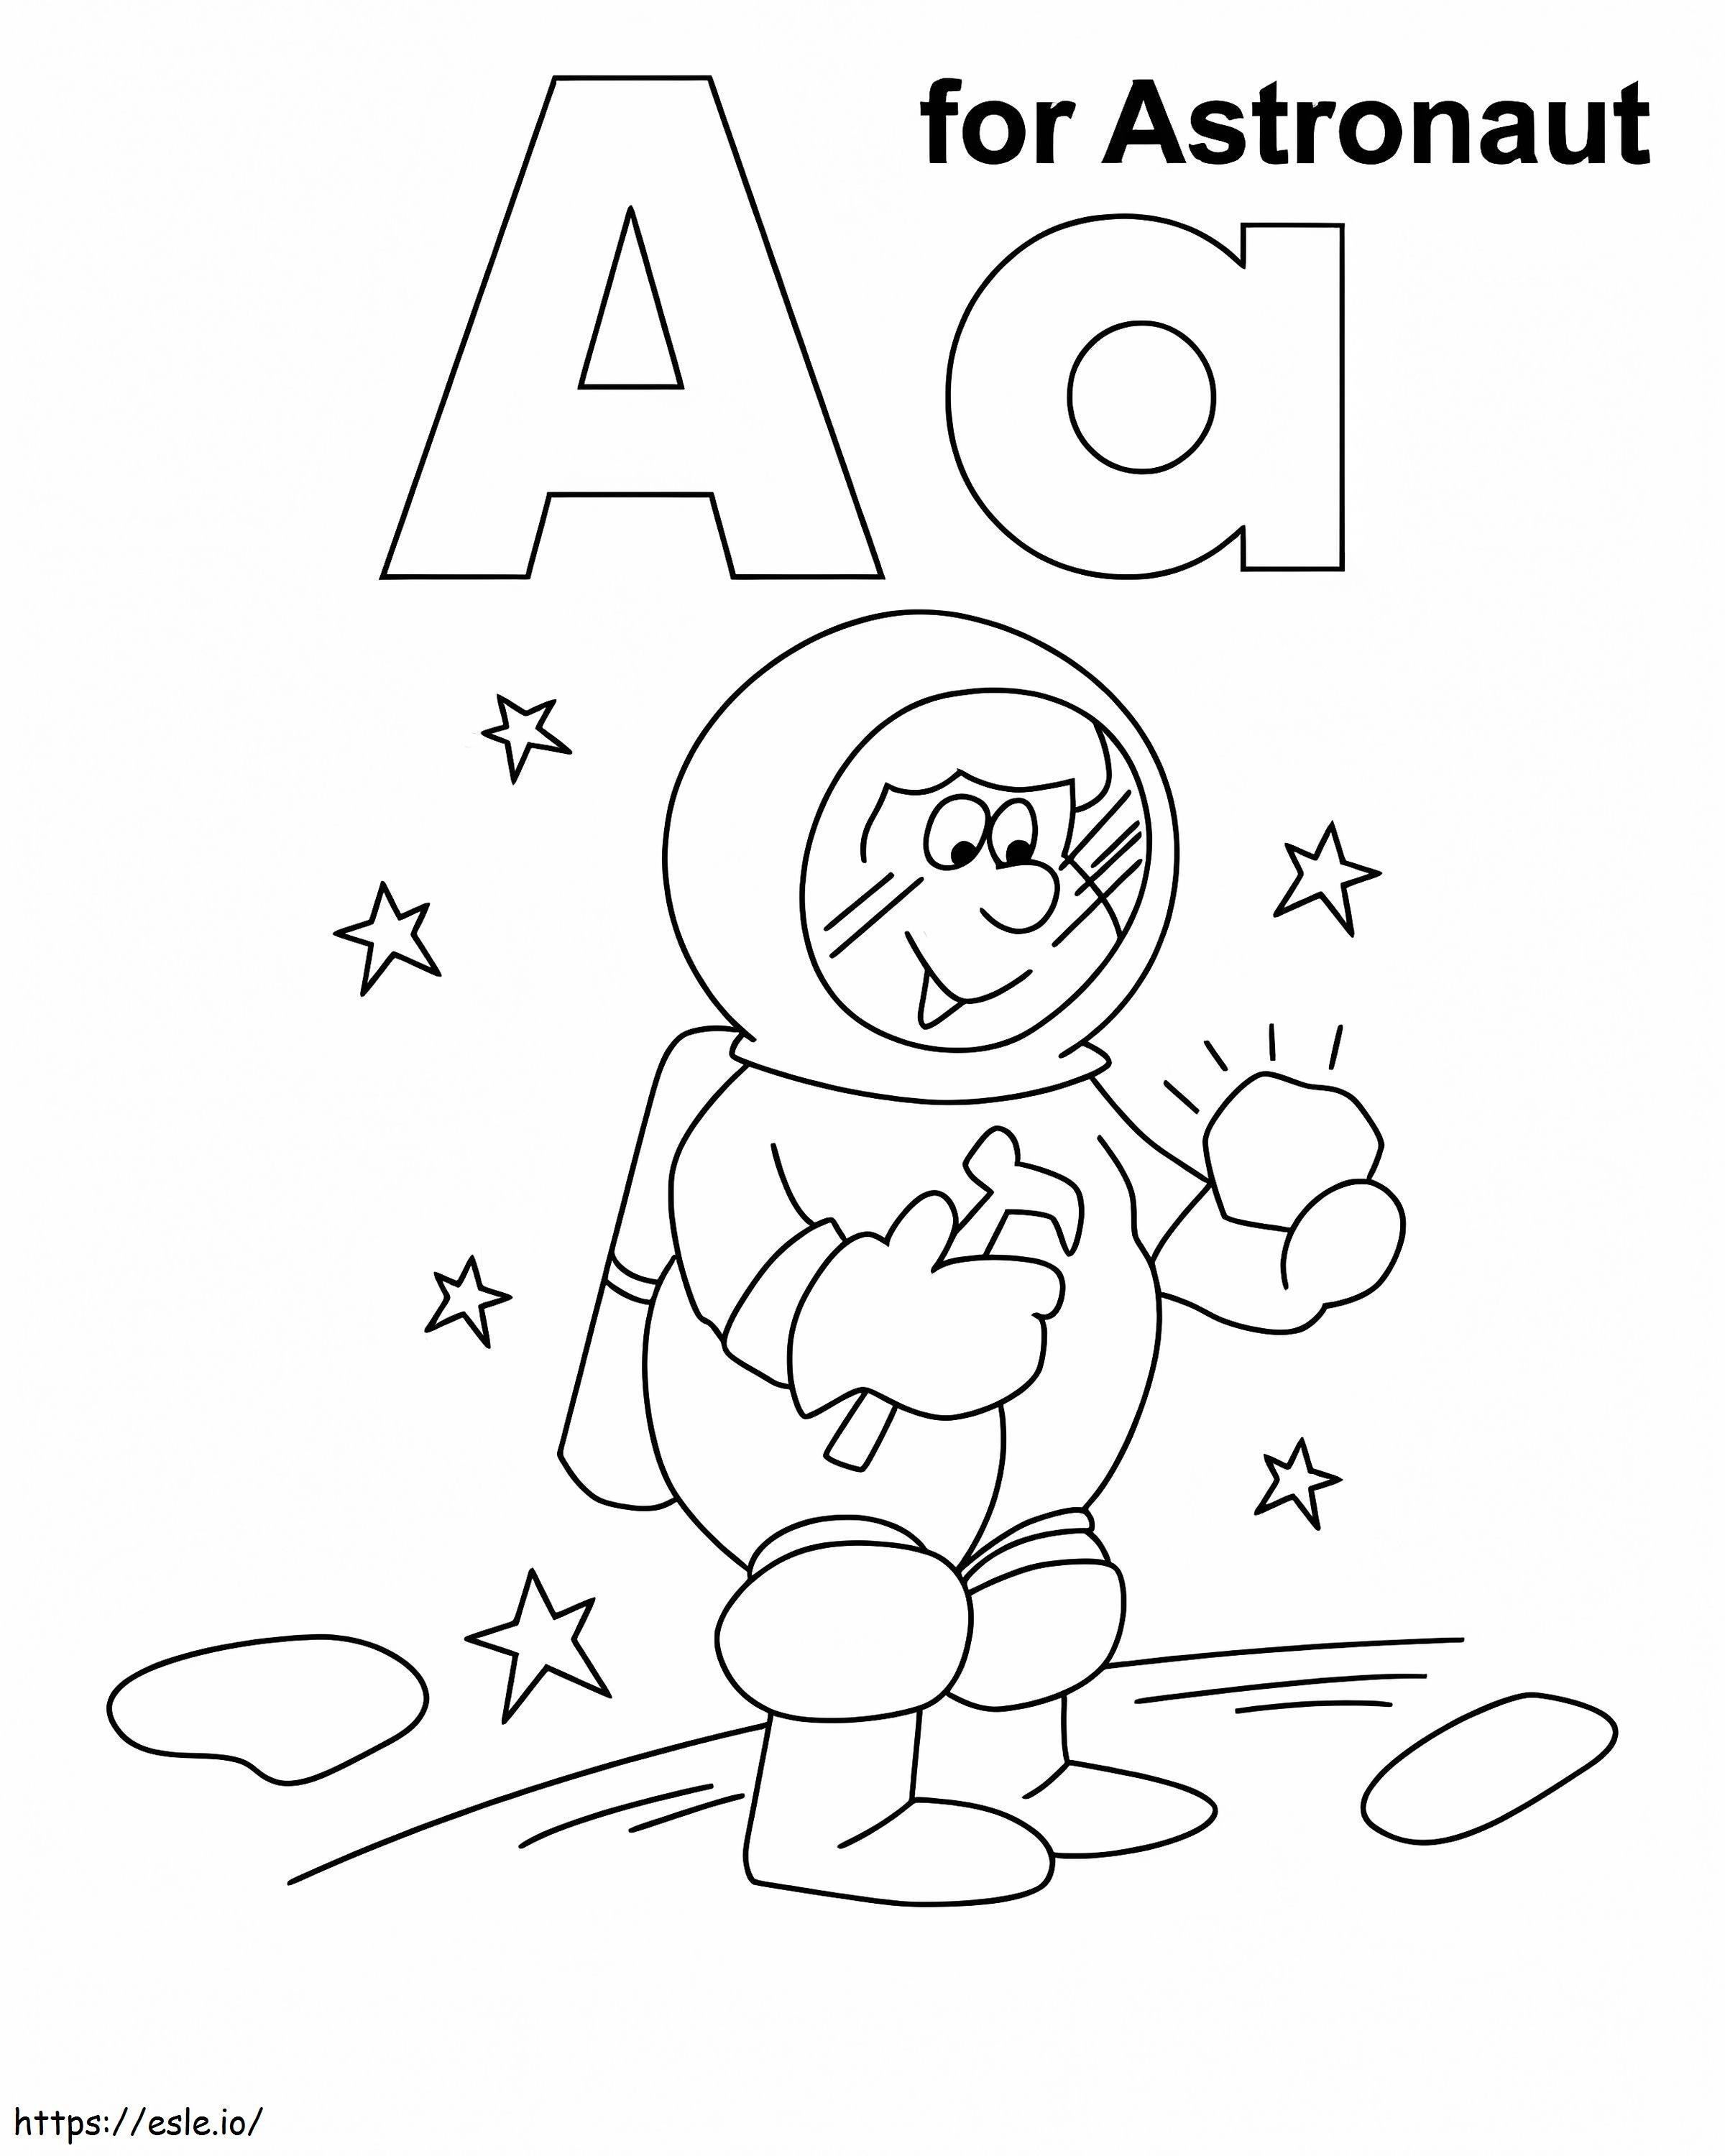 Lettera A per l'astronauta da colorare